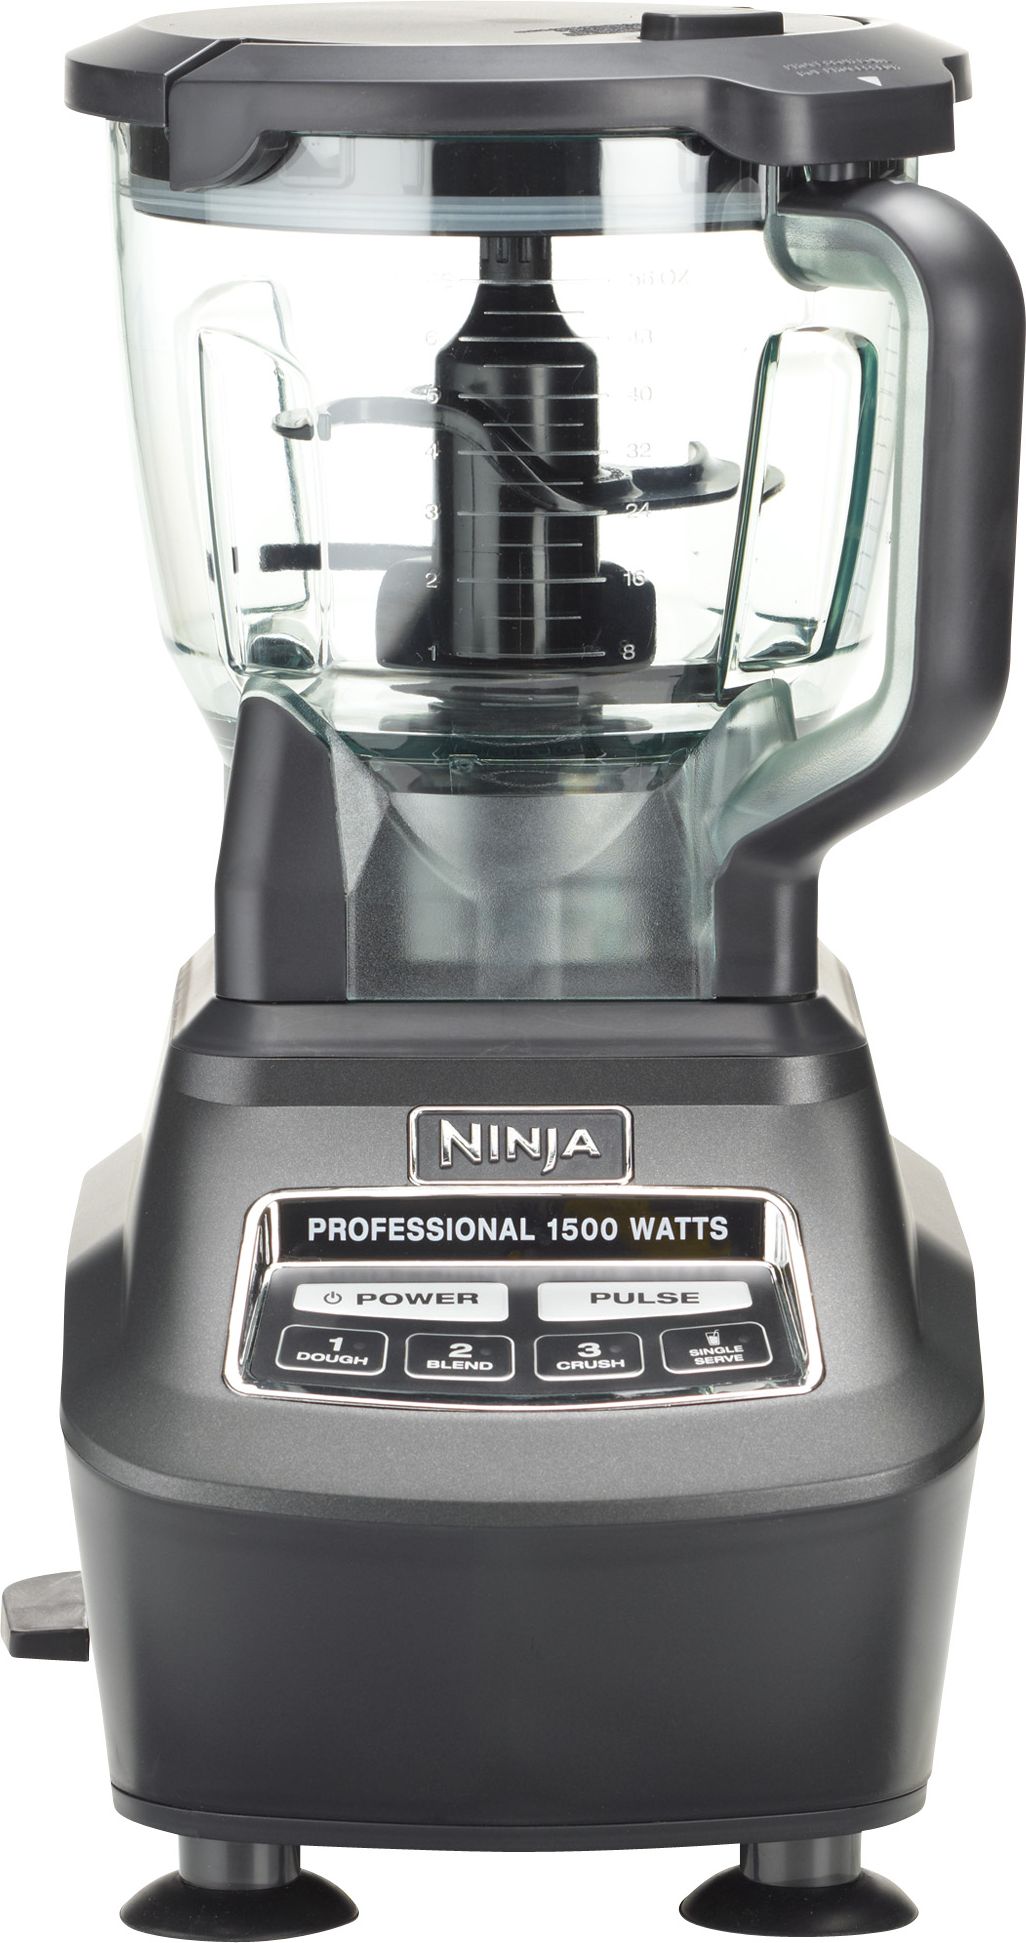 Ninja professional blender set mega kitchen system 1500 watt - appliances -  by owner - sale - craigslist